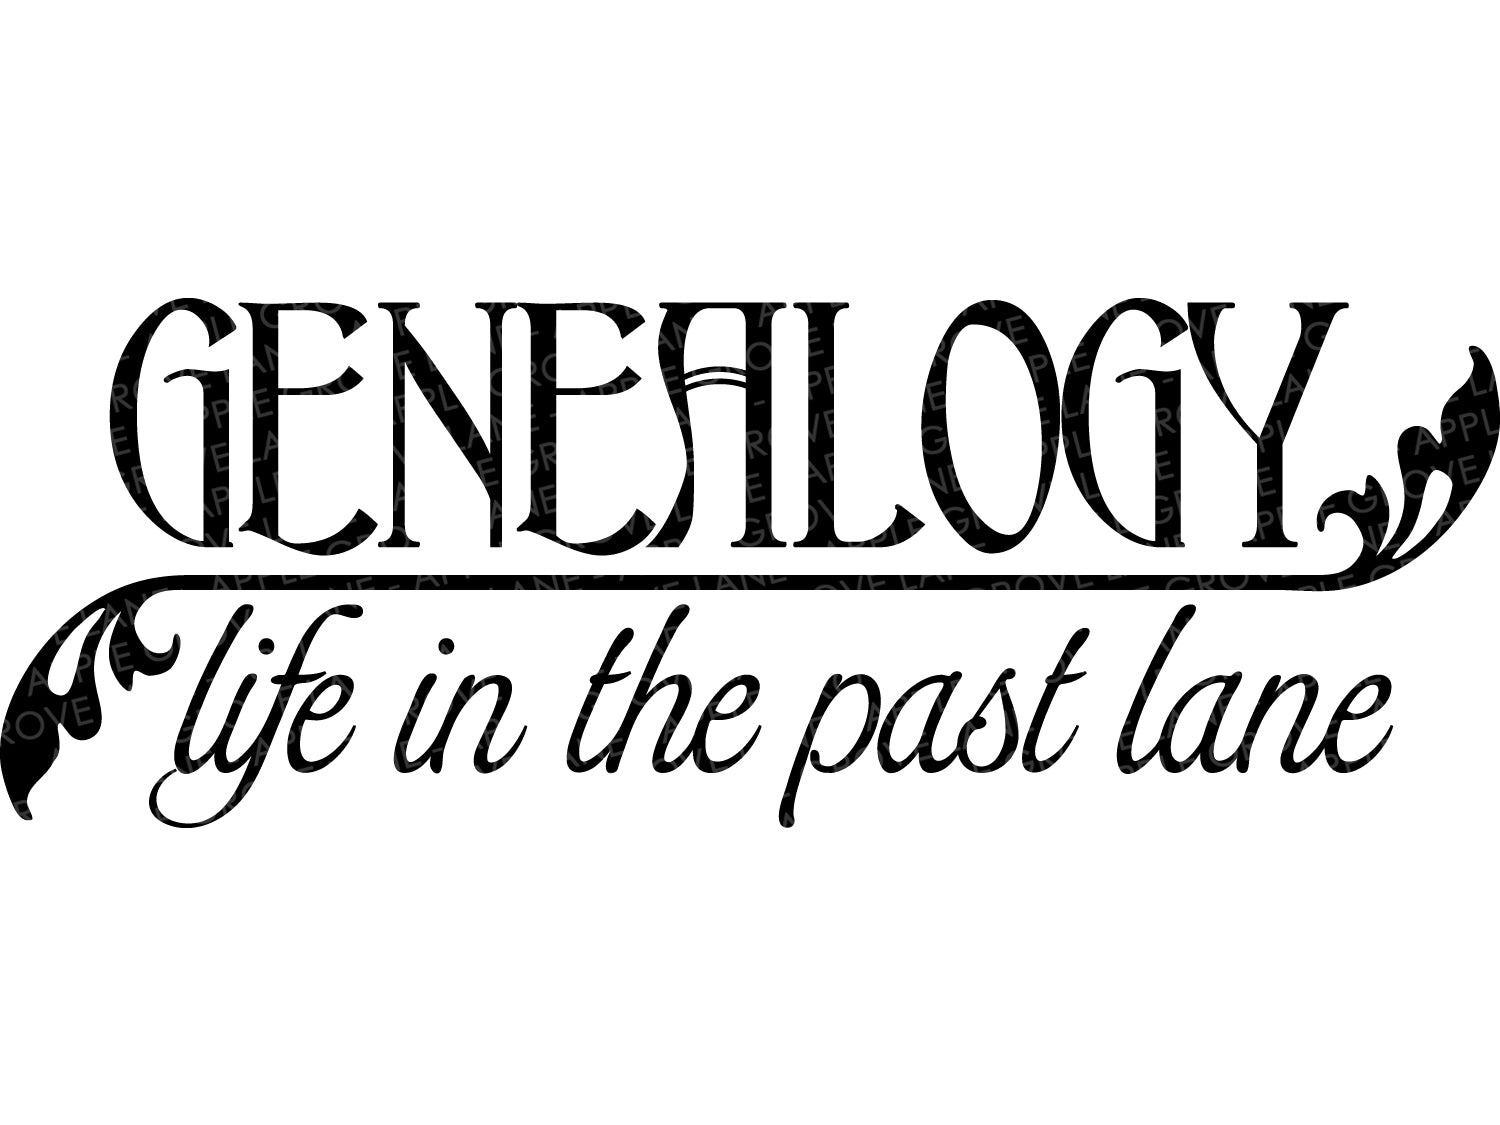 Genealogy Svg - Life in Past Lane Svg - Family History Svg - Ancestry Svg - Family Tree Svg - Genealogy Sign - Lineage Svg - Ancestors Svg